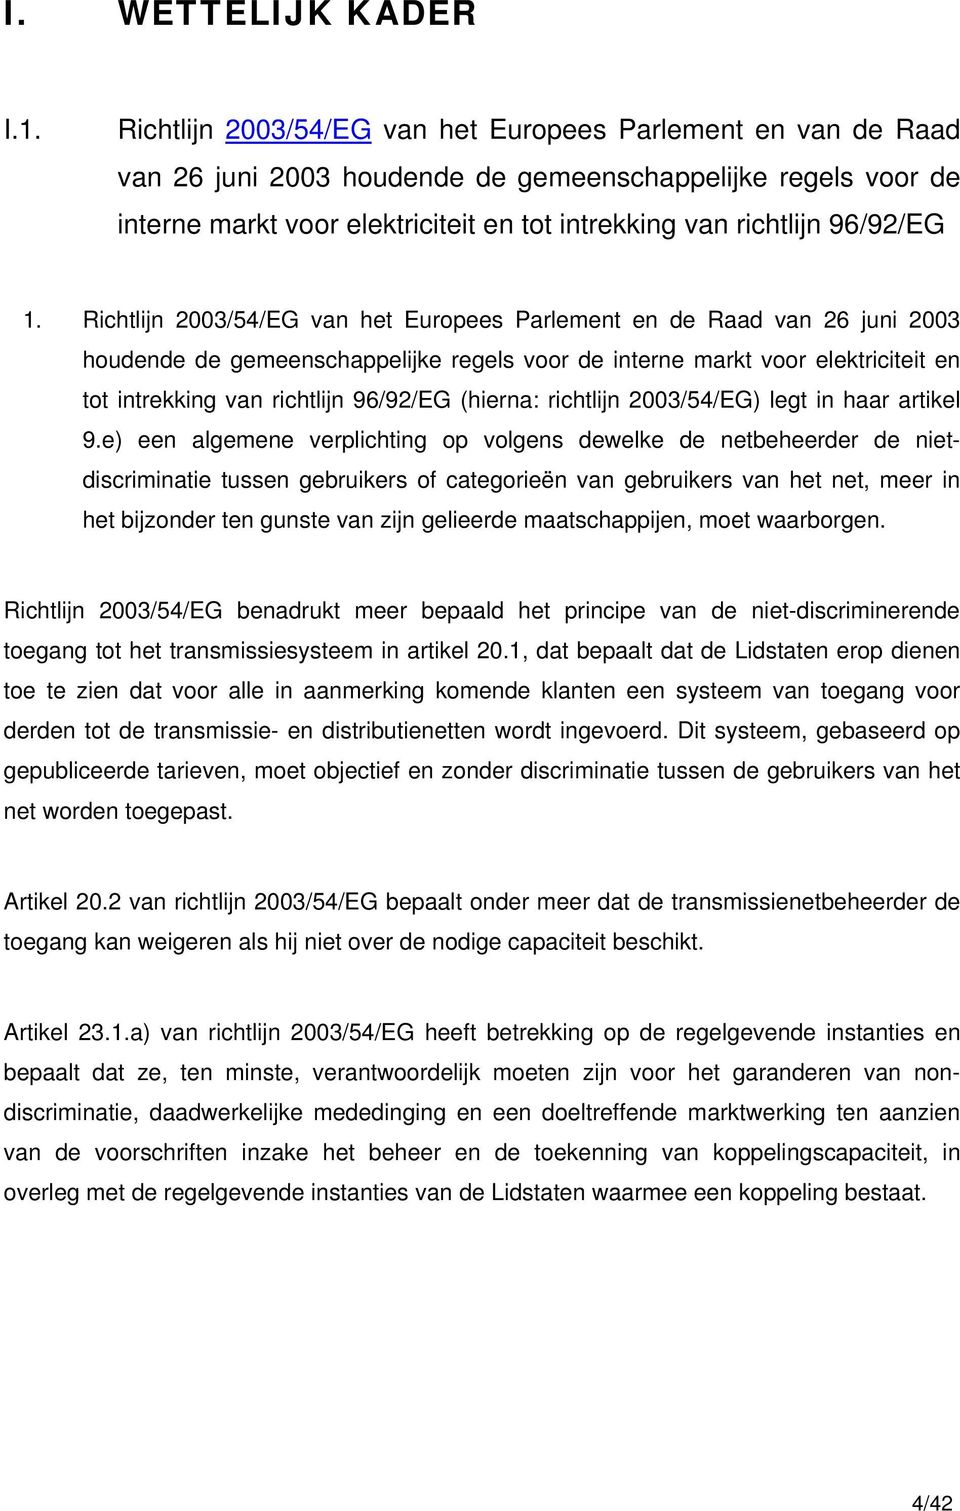 1. Richtlijn 2003/54/EG van het Europees Parlement en de Raad van 26 juni 2003 houdende de gemeenschappelijke regels voor de interne markt voor elektriciteit en tot intrekking van richtlijn 96/92/EG